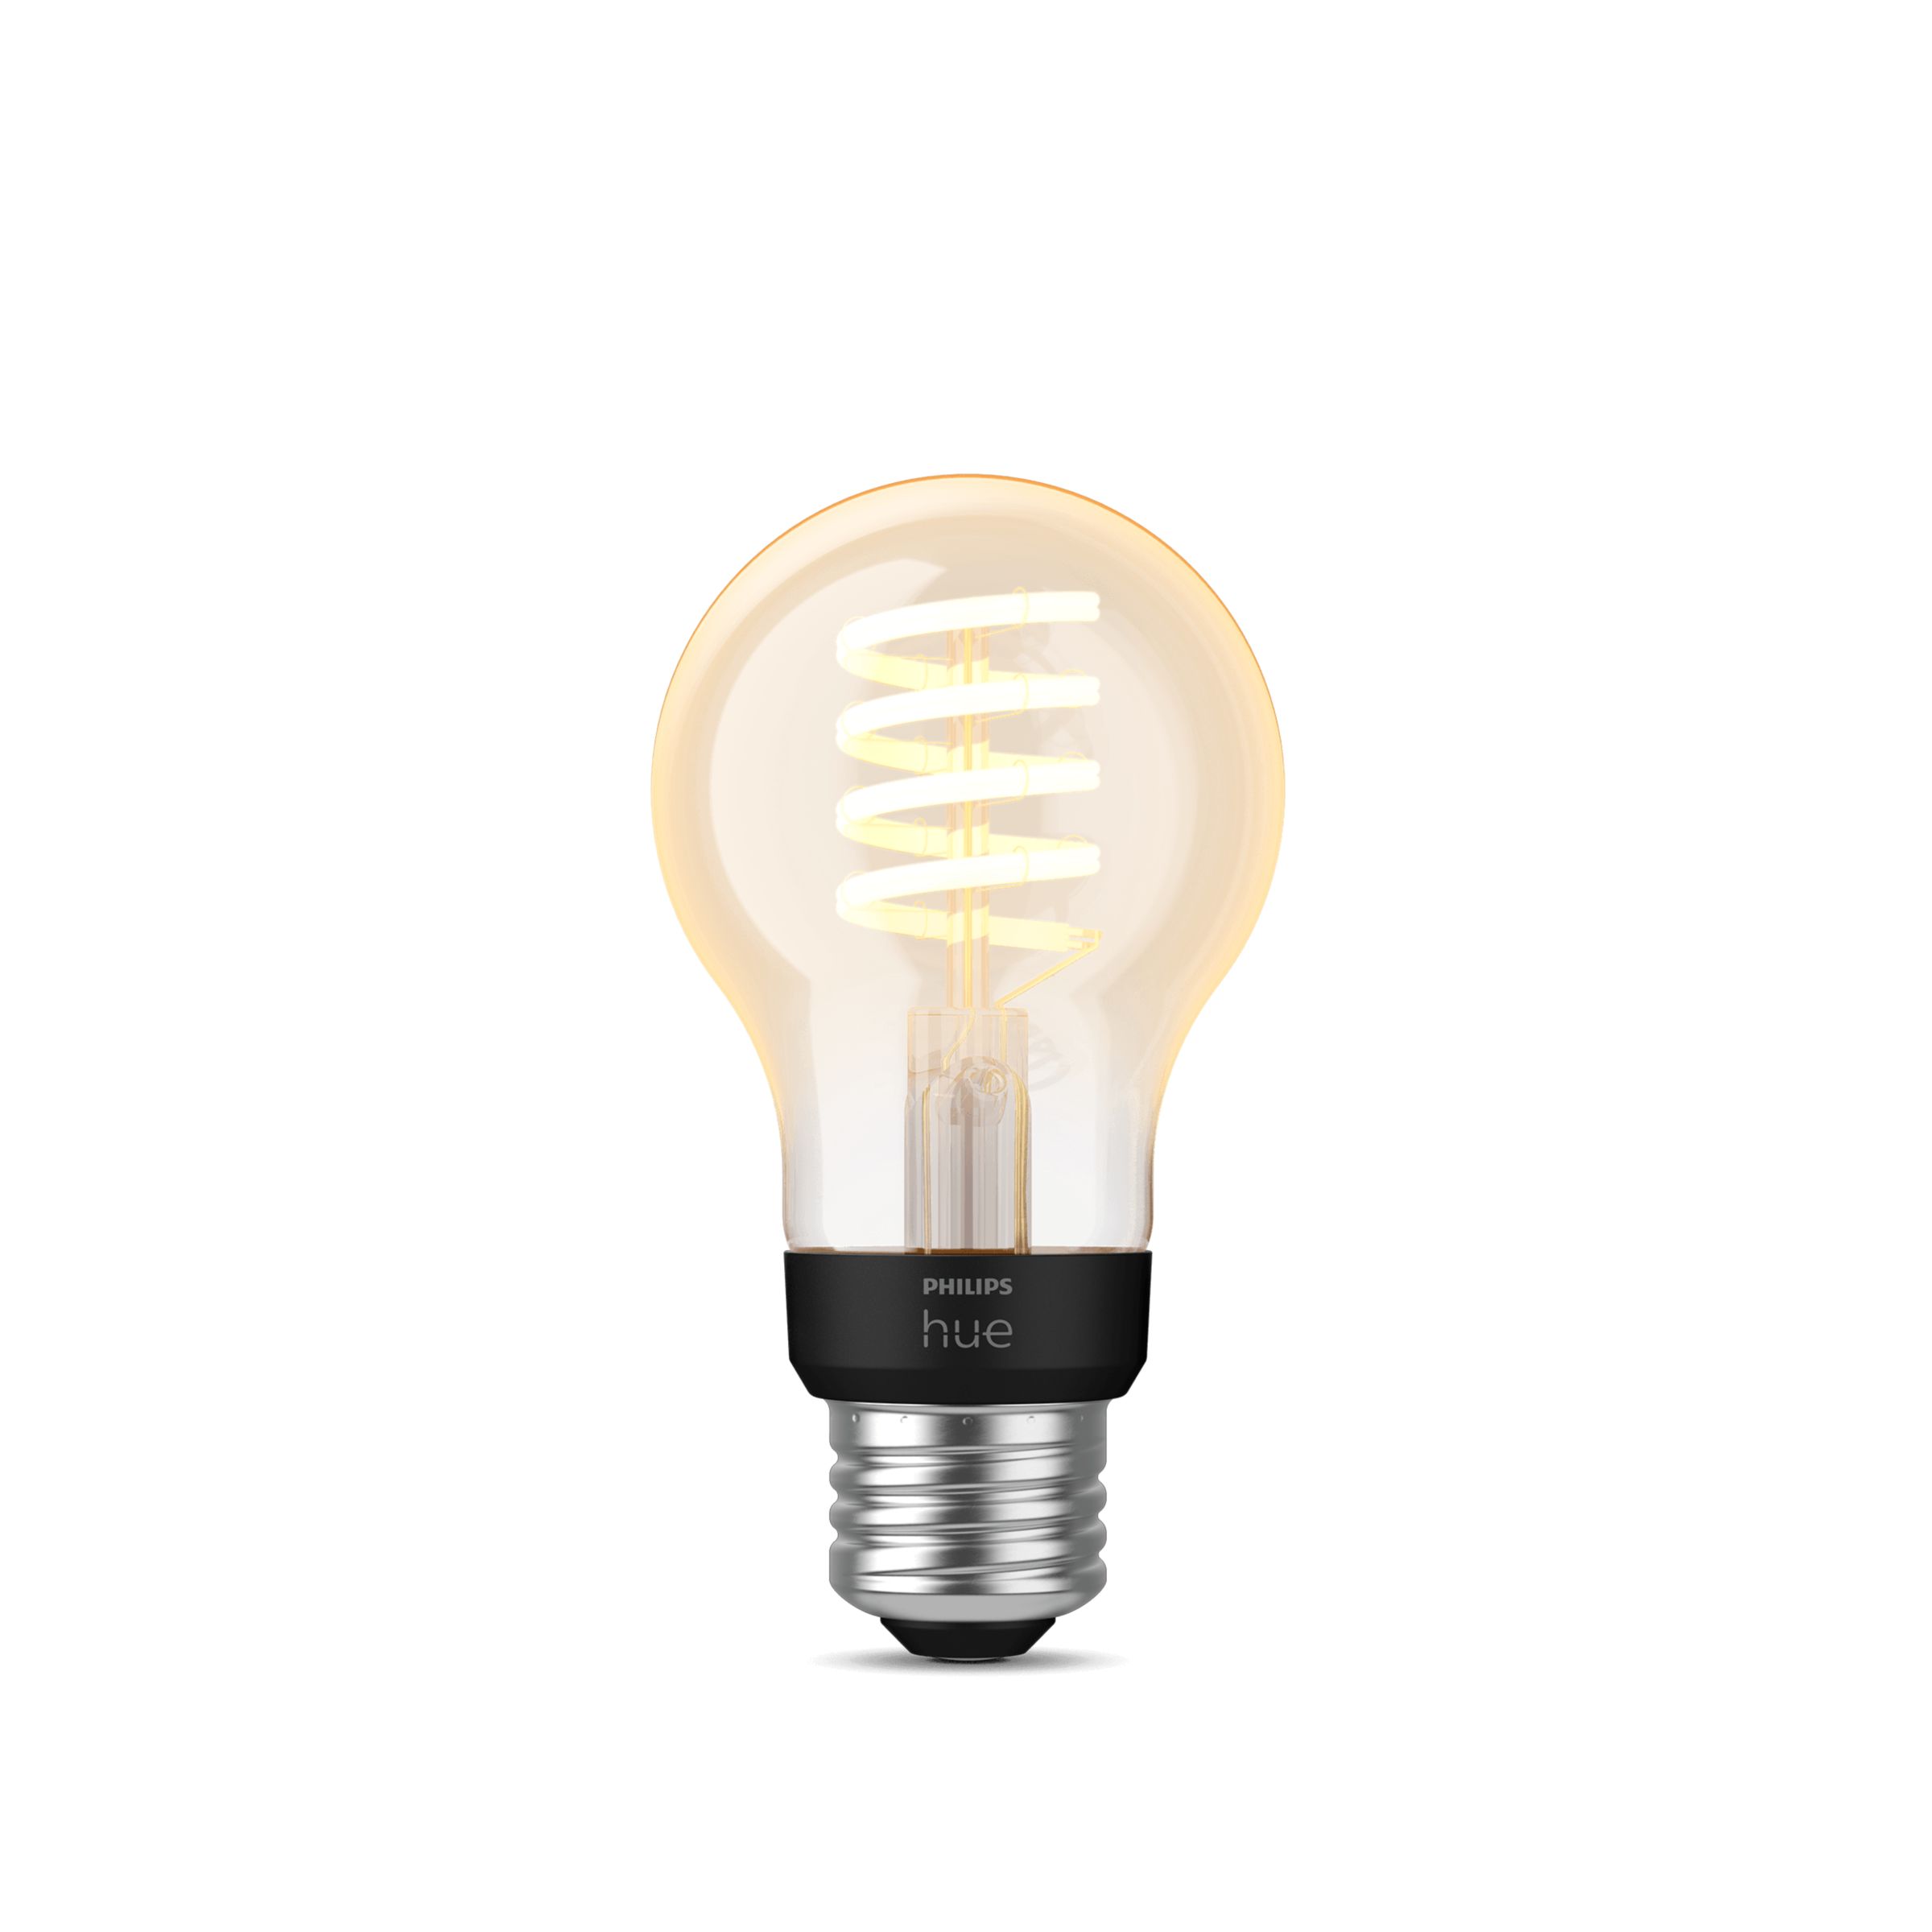 Hue A19 E26 75W LED Bulb White and Colour Ambiance | Philips Hue US